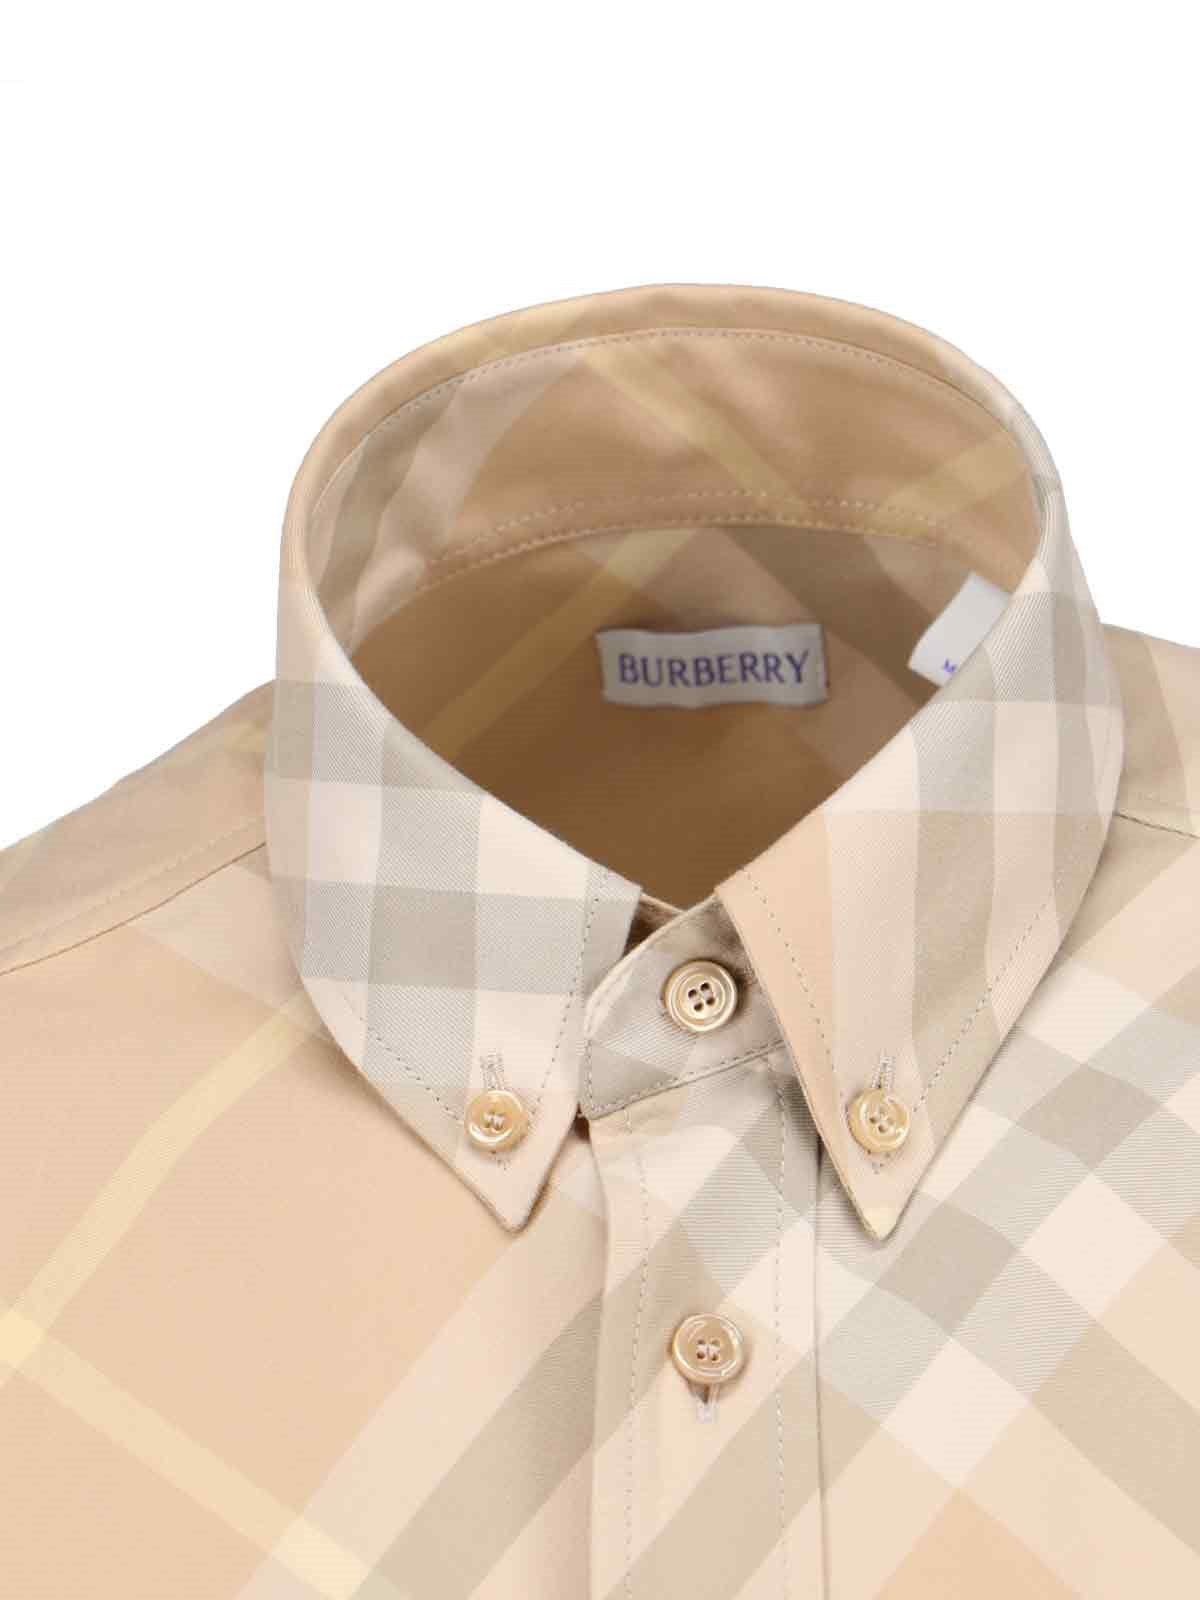 Burberry Camicia check-camicie-Burberry-Camicia check Burberry, in cotone beige, dettagli bianchi e grigi, colletto button-down, maniche corte, chiusura bottoni, ricamo logo petto, orlo curvo.-Dresso